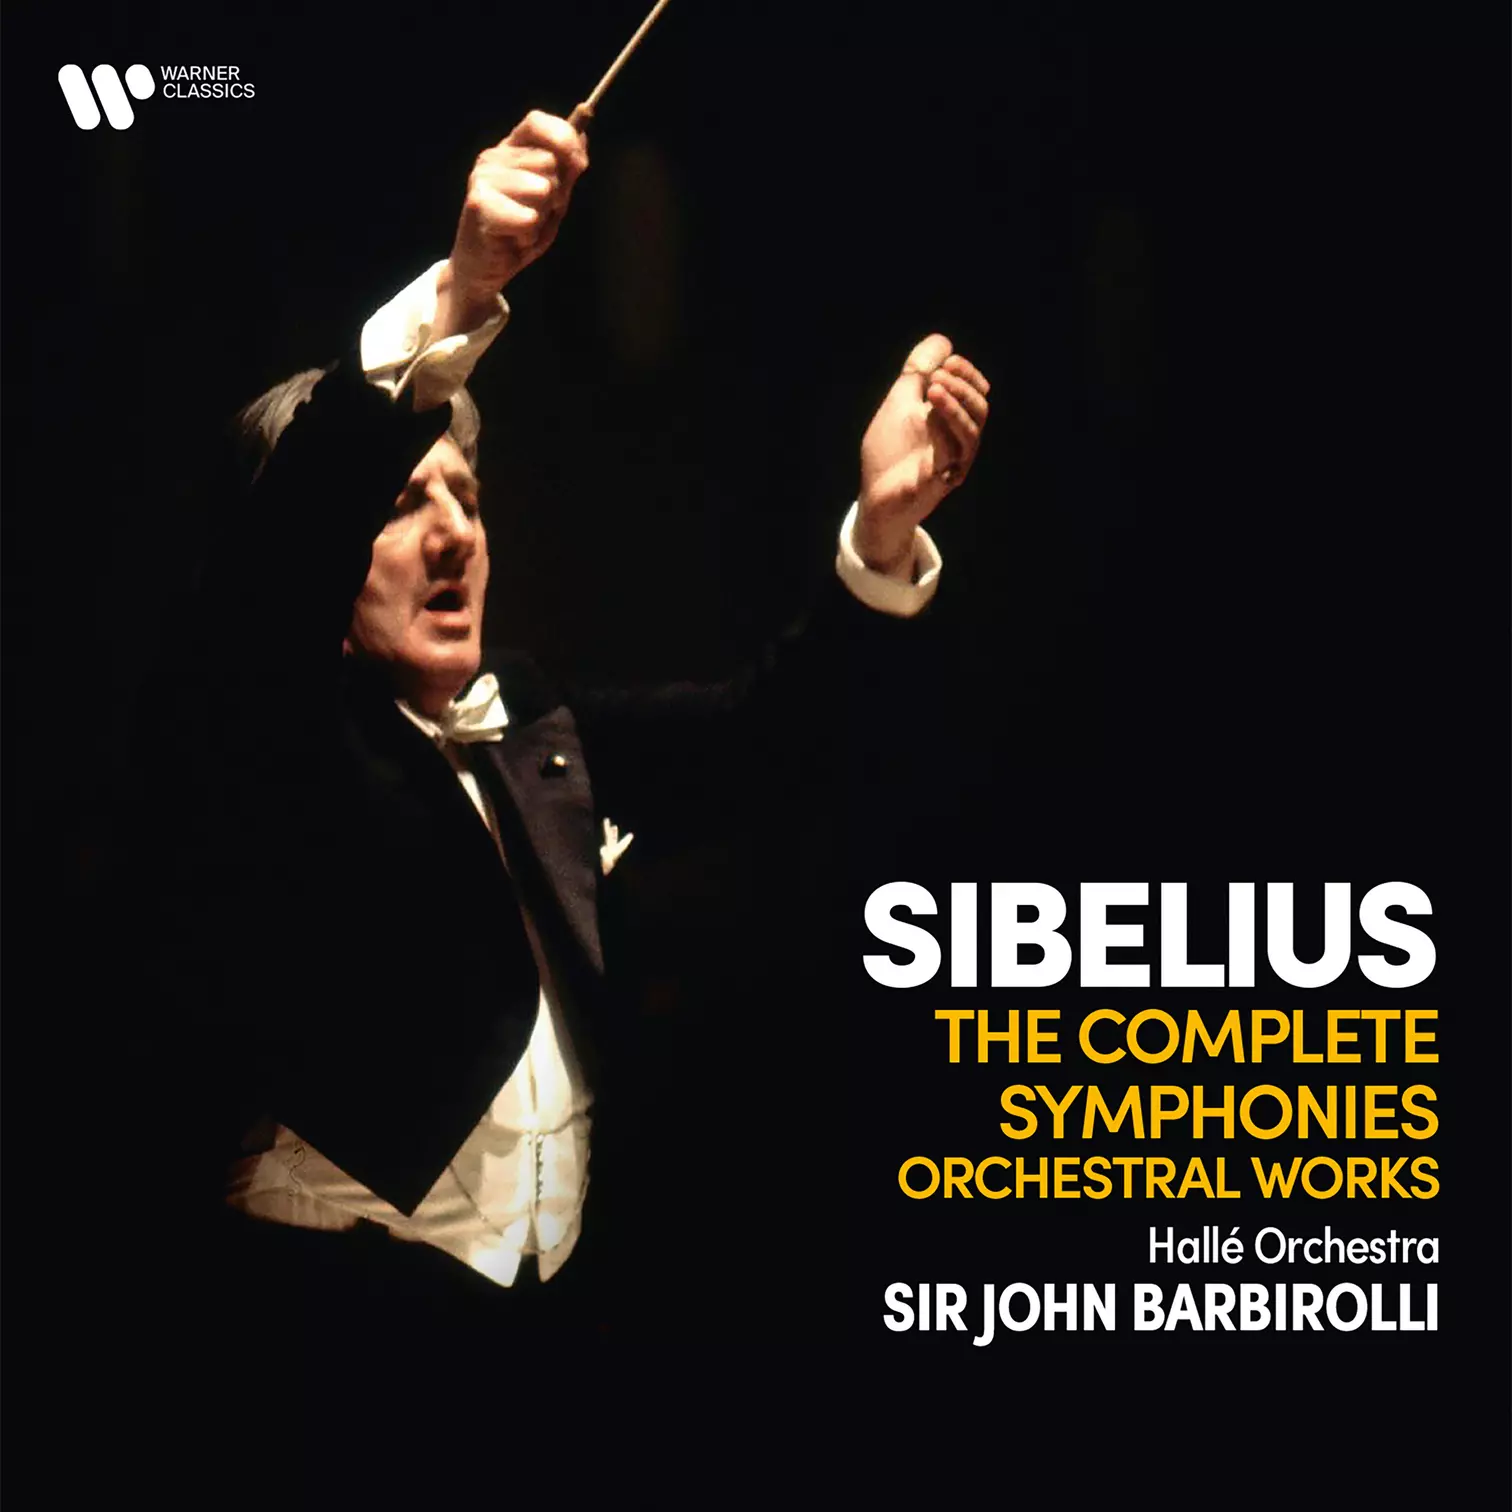 Sibelius: Complete Symphonies - Symphonic Poems